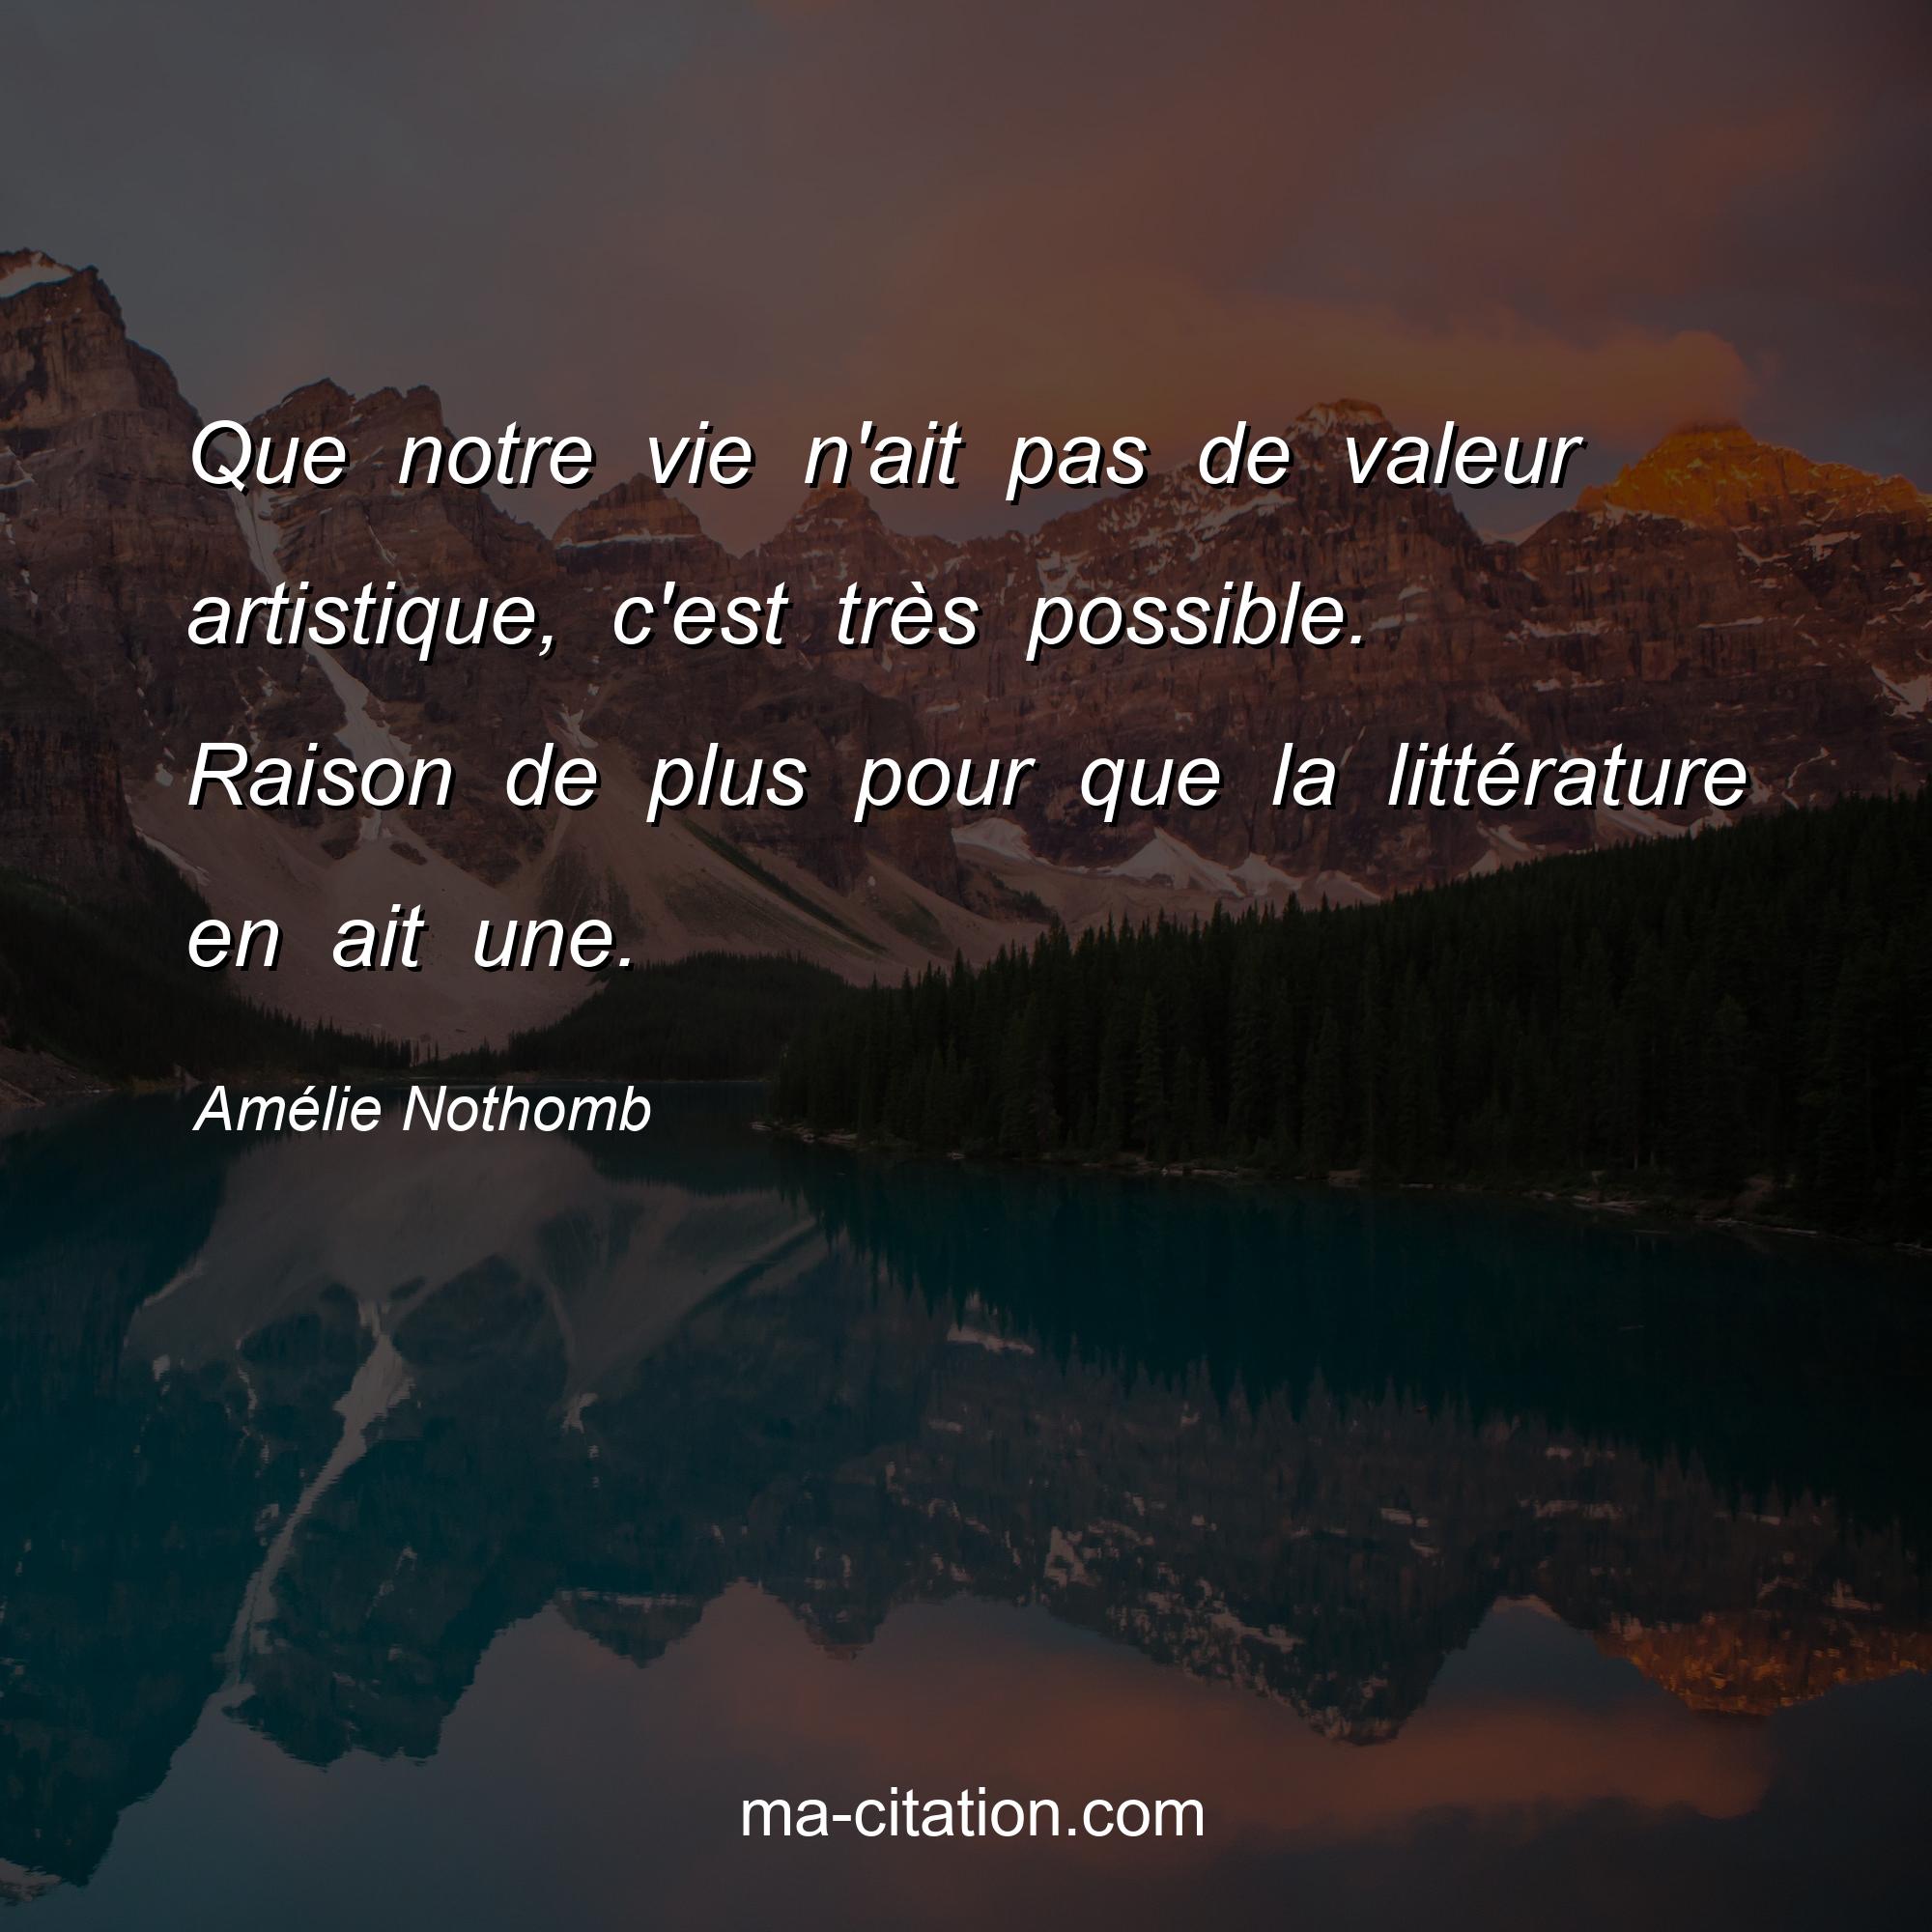 Amélie Nothomb : Que notre vie n'ait pas de valeur artistique, c'est très possible. Raison de plus pour que la littérature en ait une.